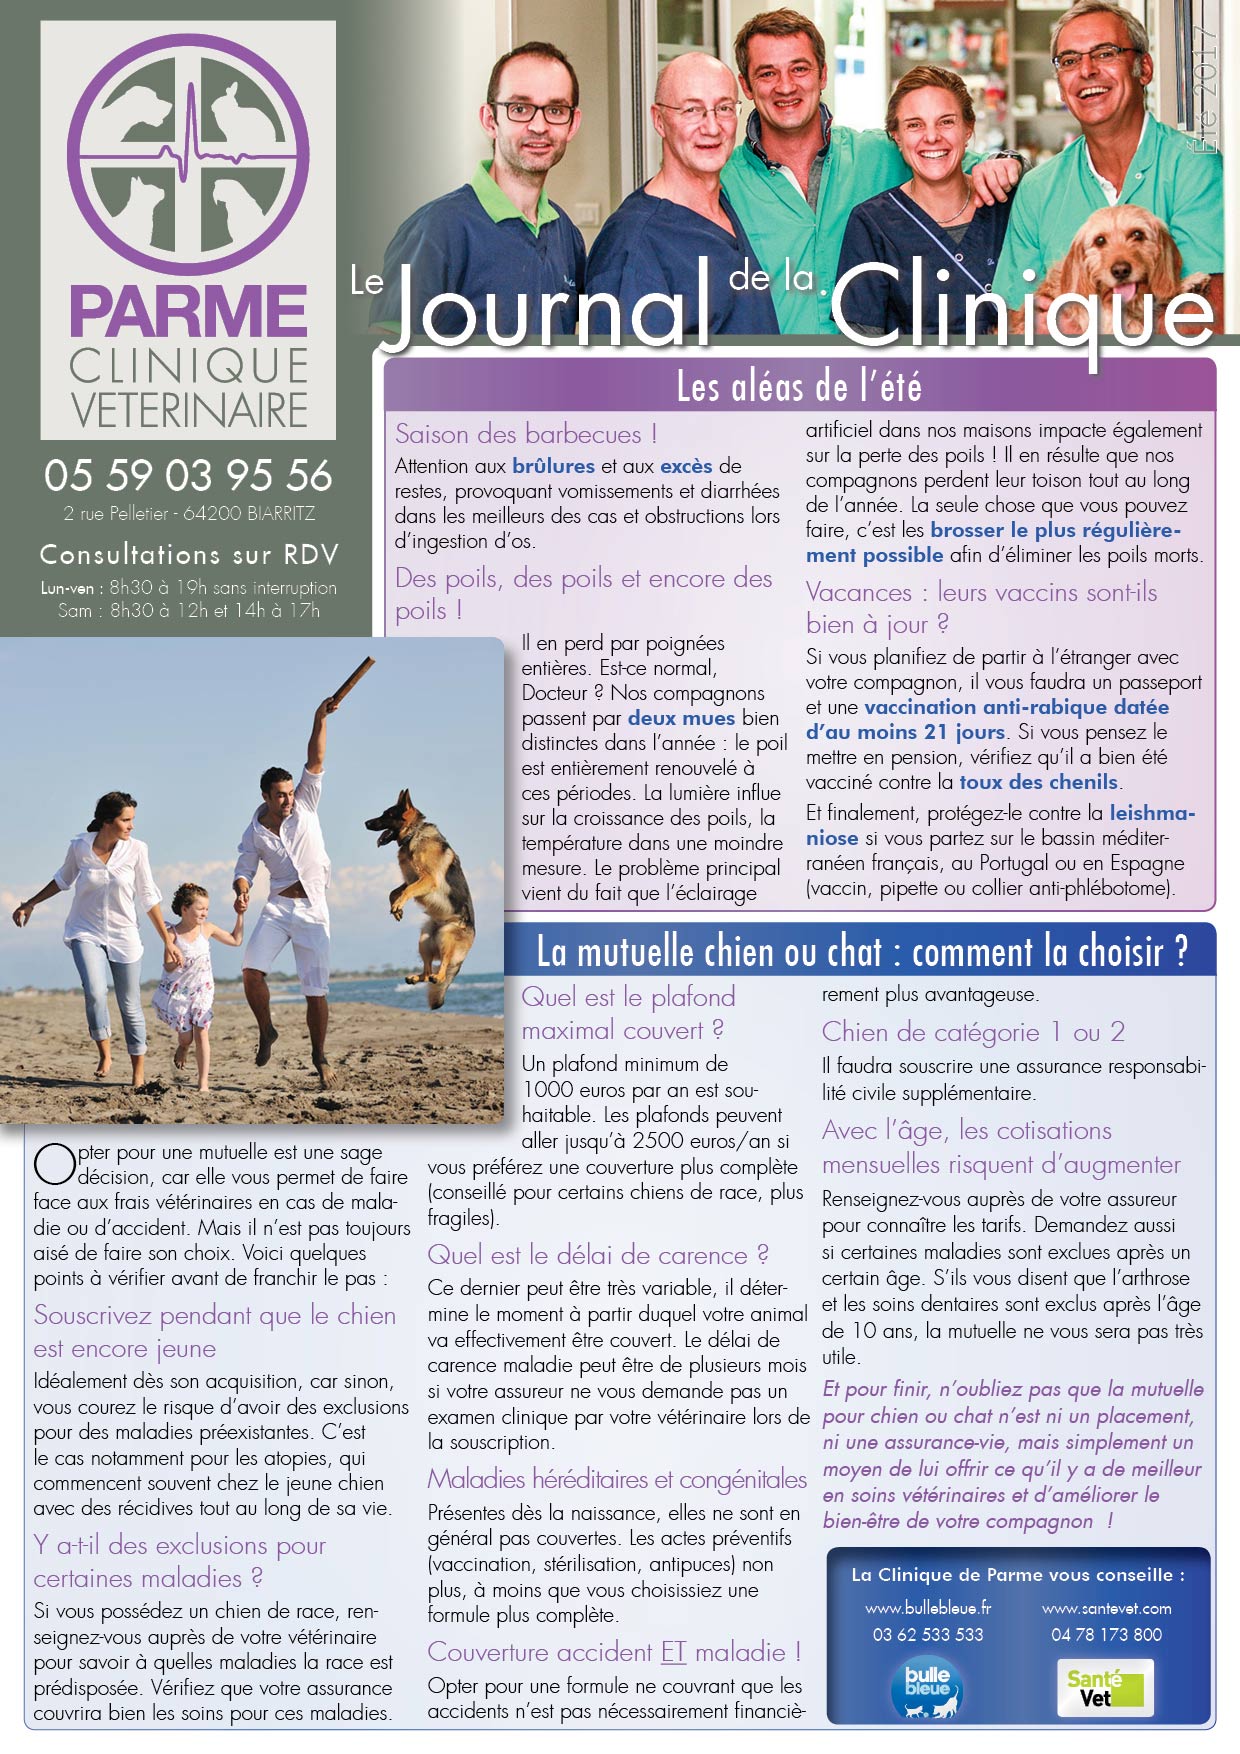 Journal de la Clinique - Été 2017 page 1